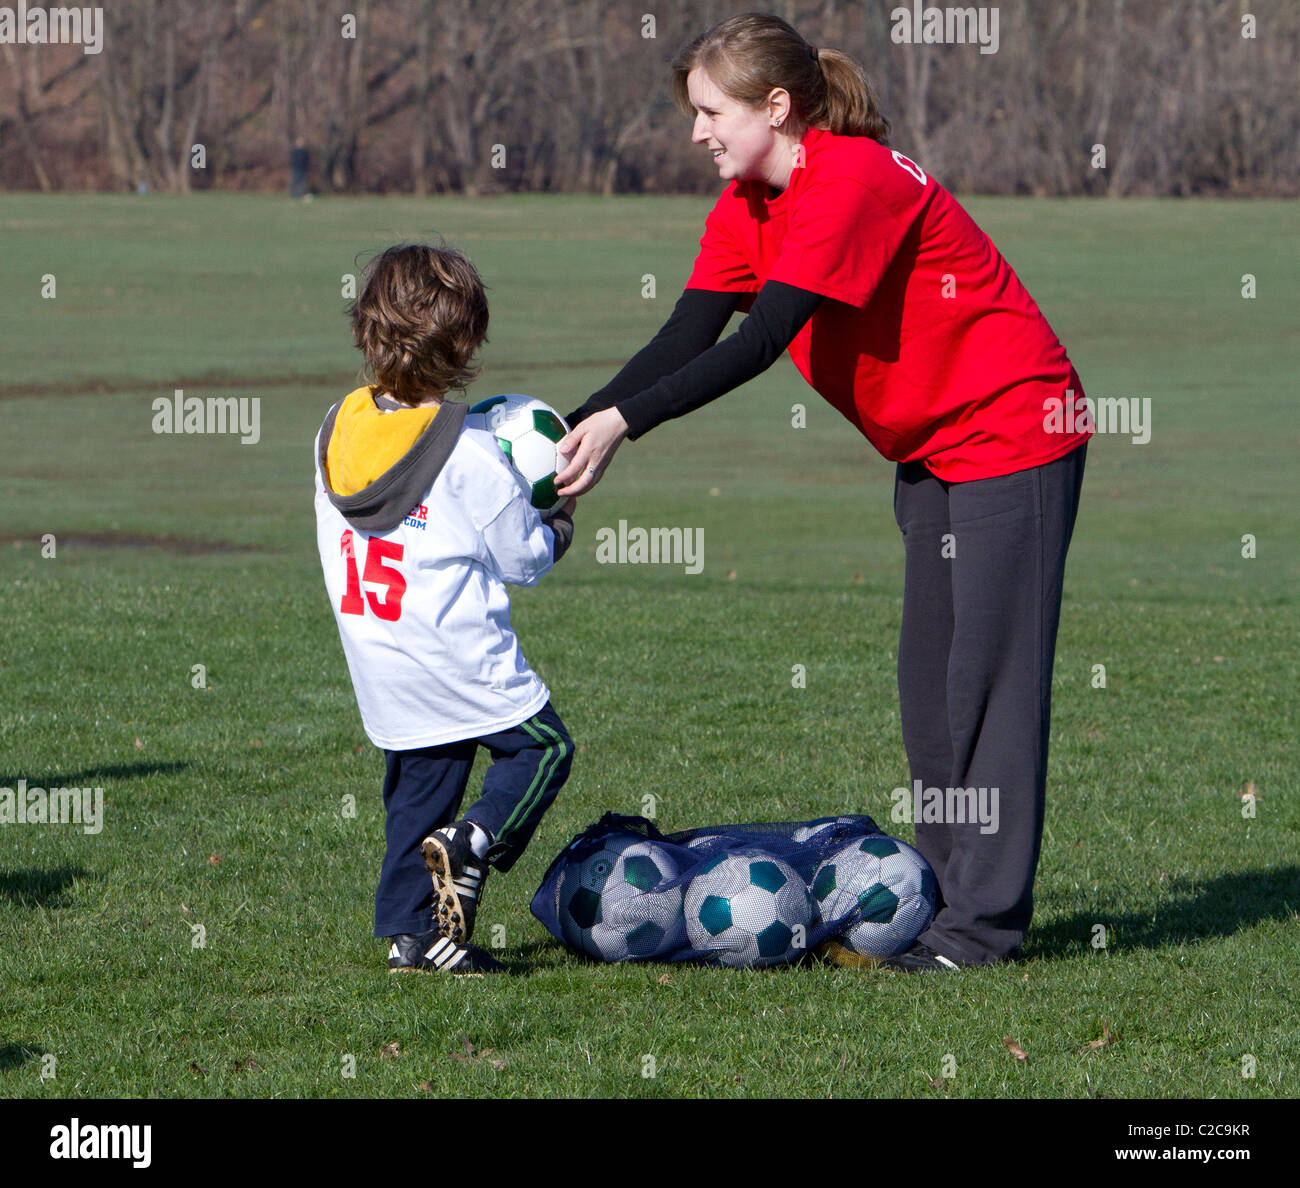 Molto giovani e bambini che giocano e di essere istruito nel calcio. Foto Stock